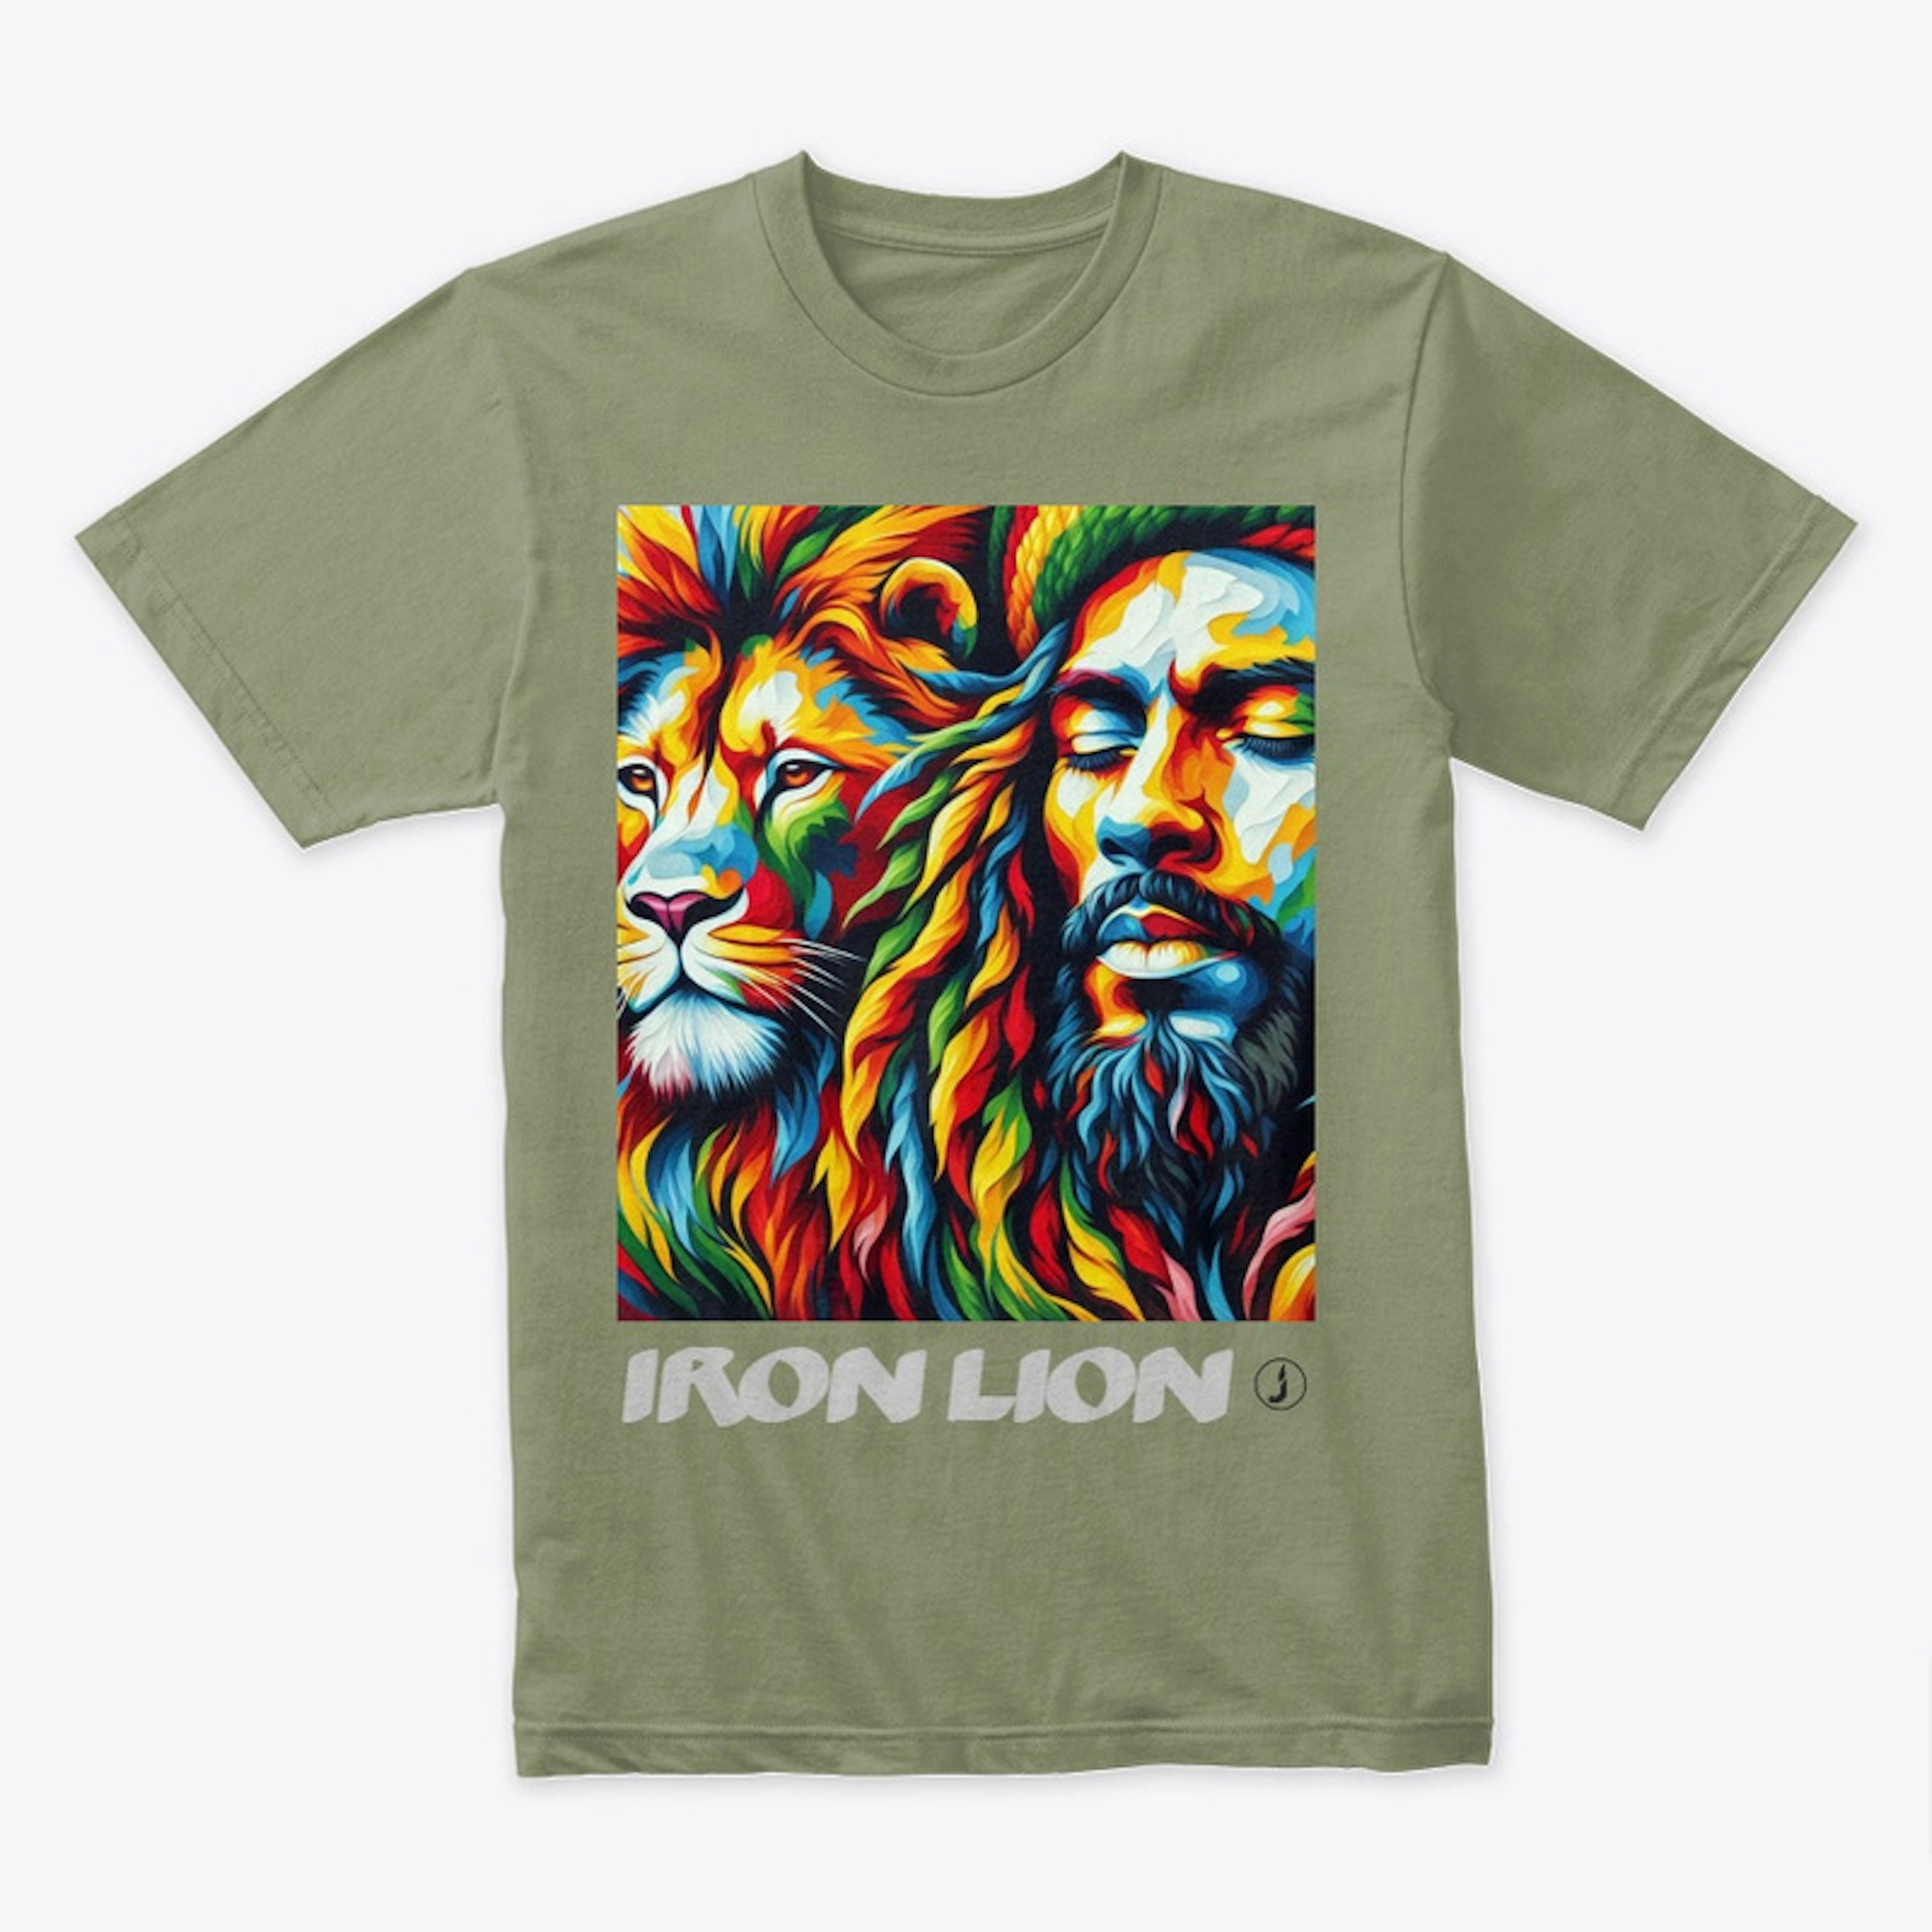 Iron Lion T's